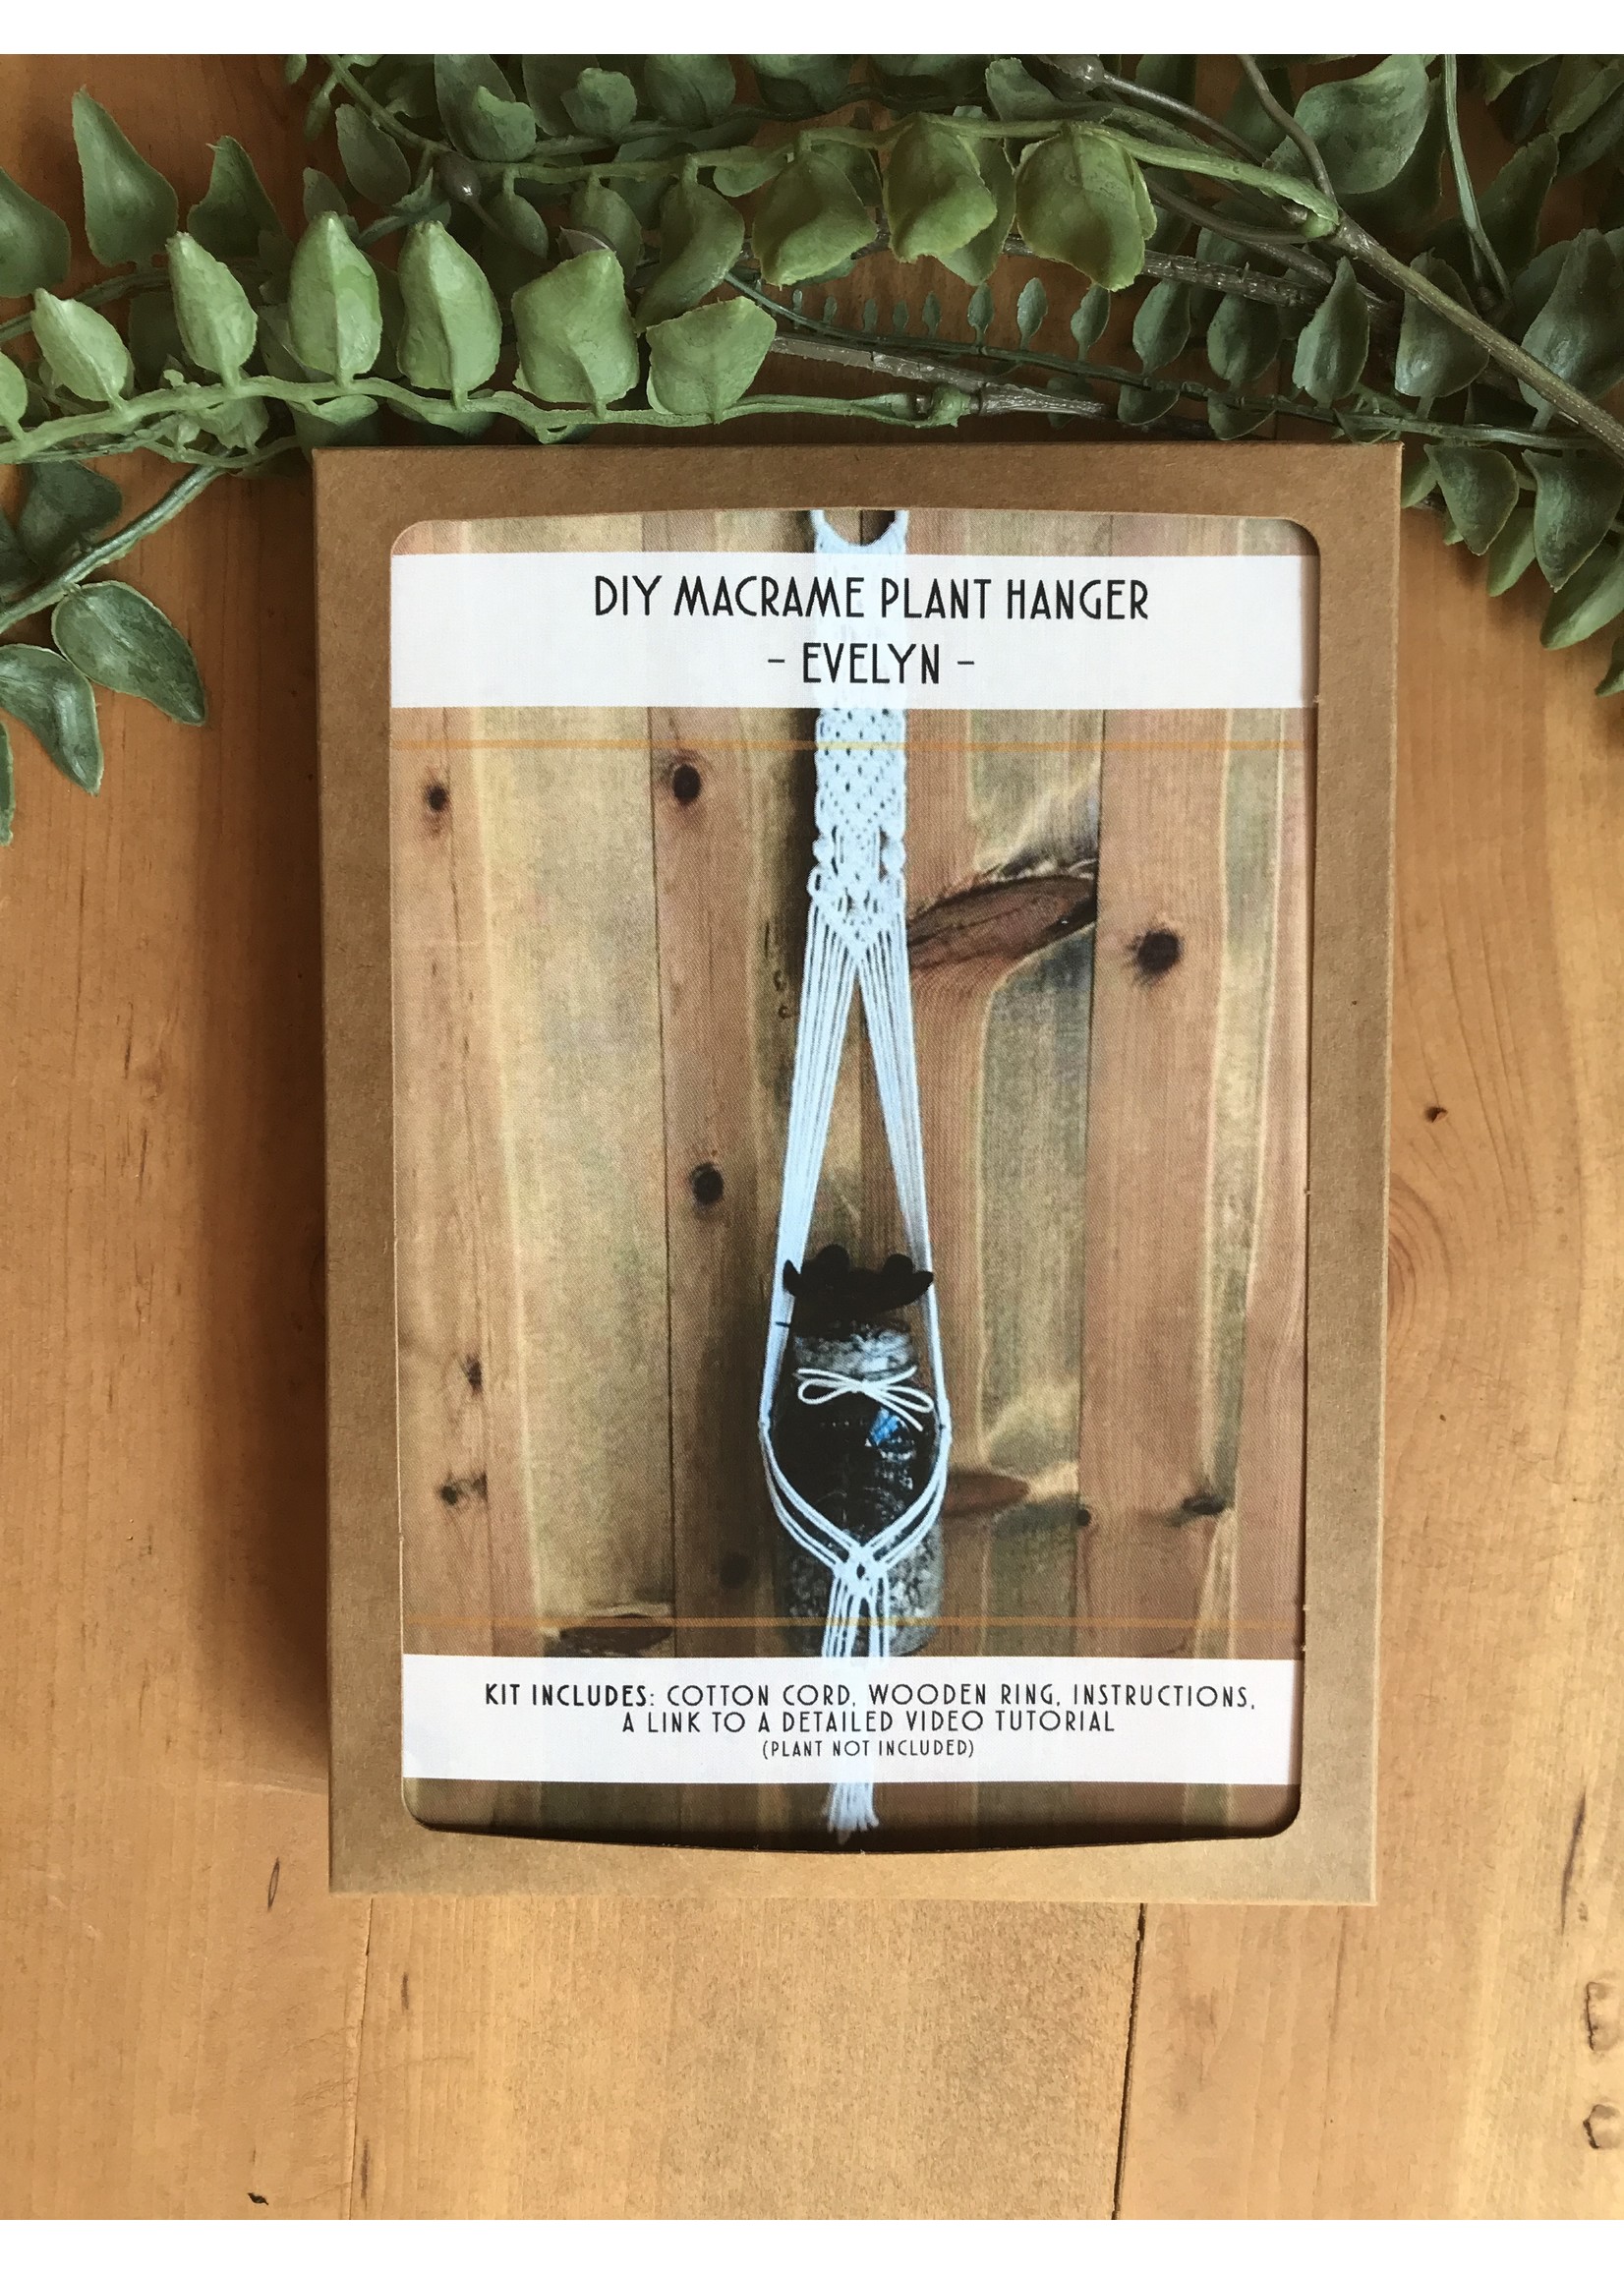 DIY Macrame Plant Hanger Kit - The Evelyn